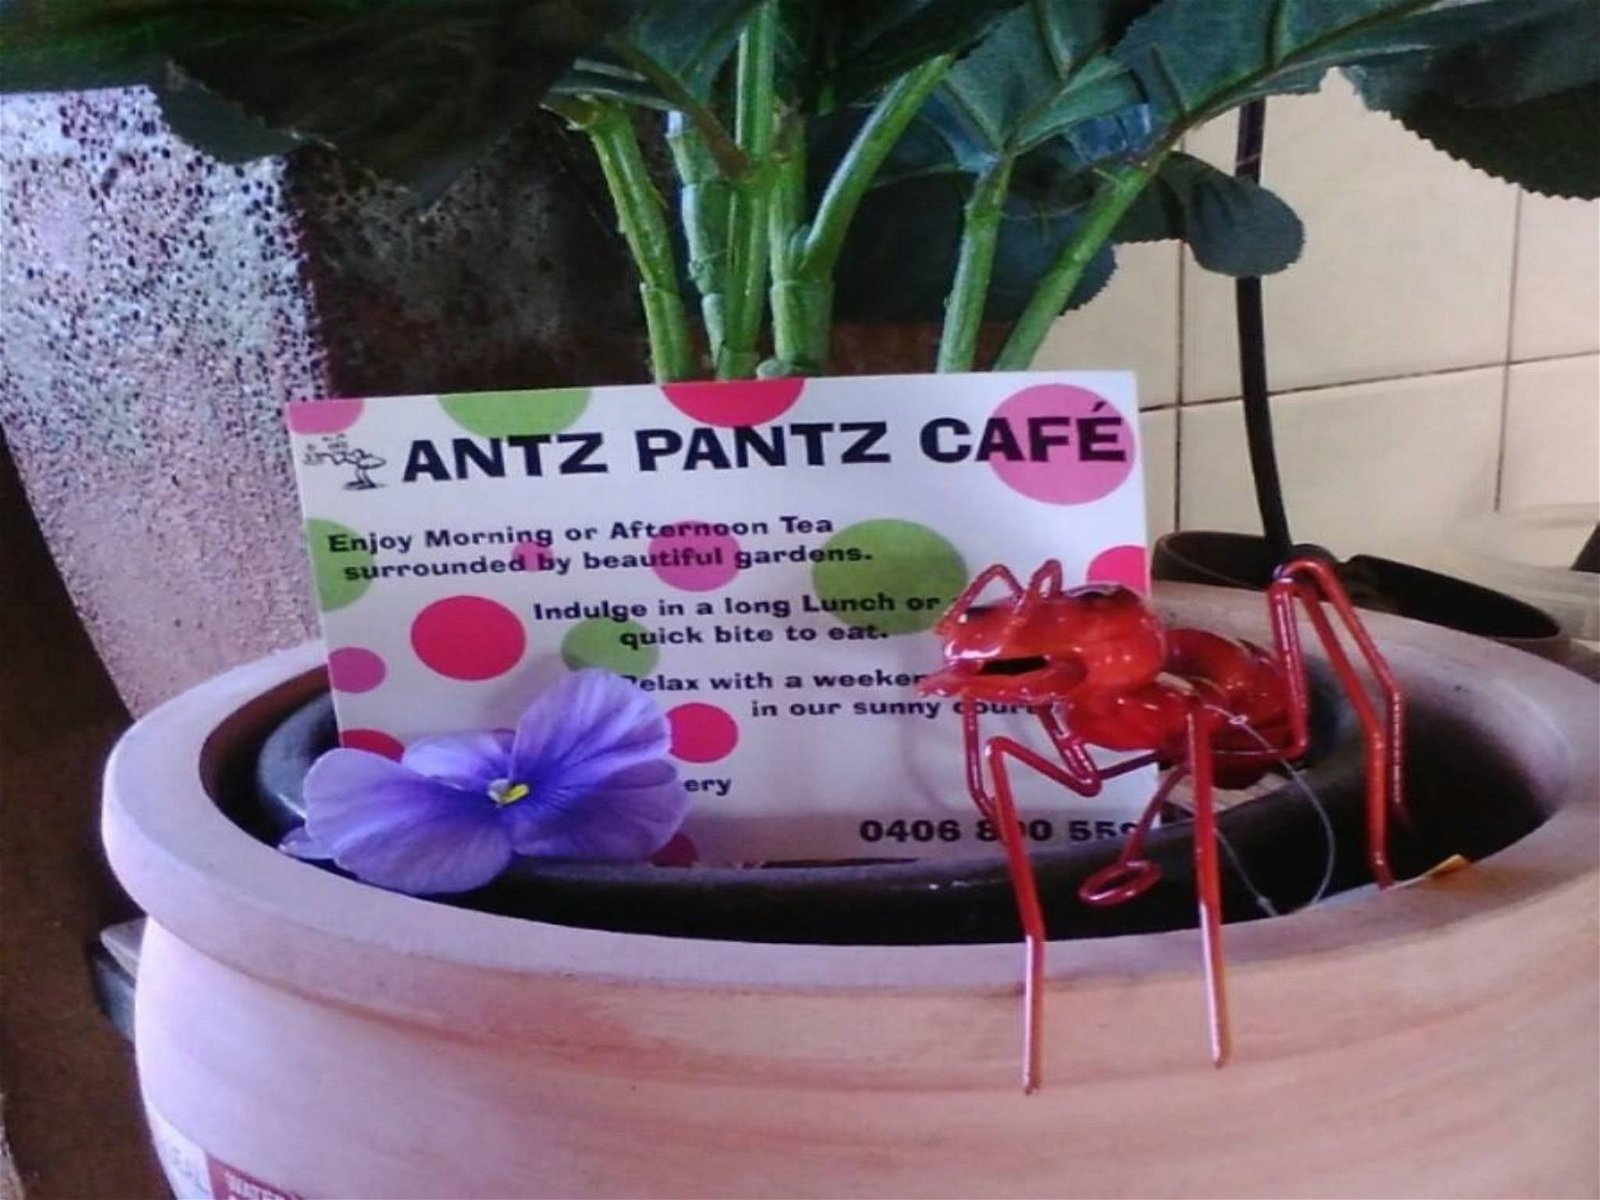 Antz Pantz Cafe